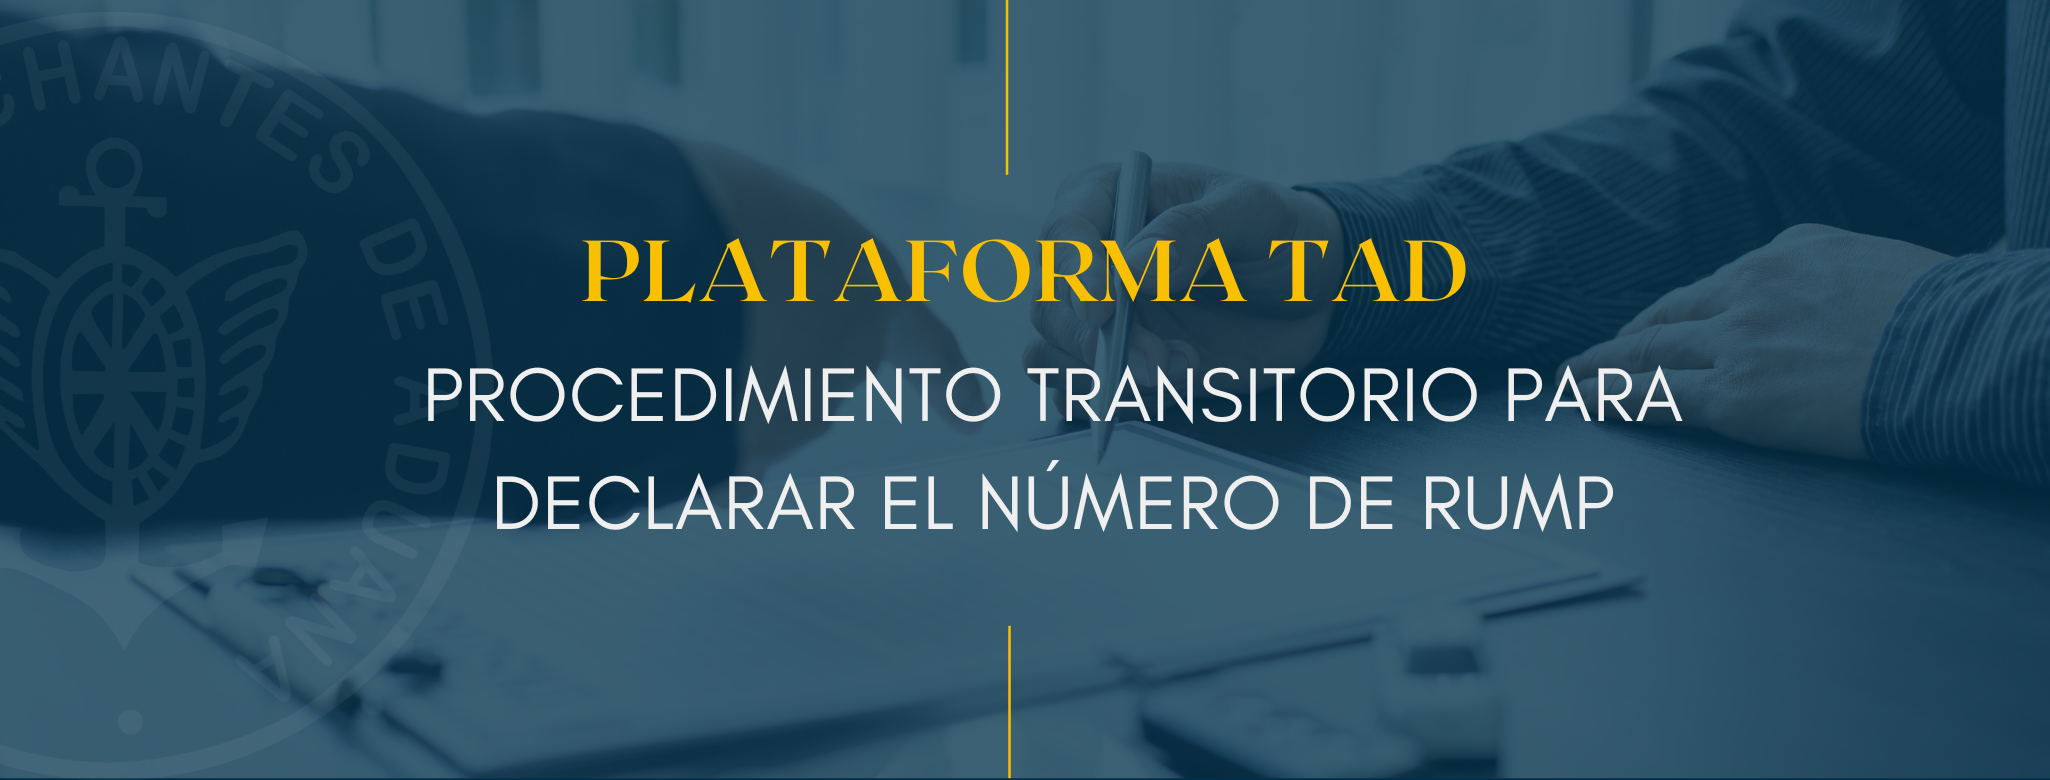 Plataforma TAD: Procedimiento transitorio para declarar el Número de RUMP